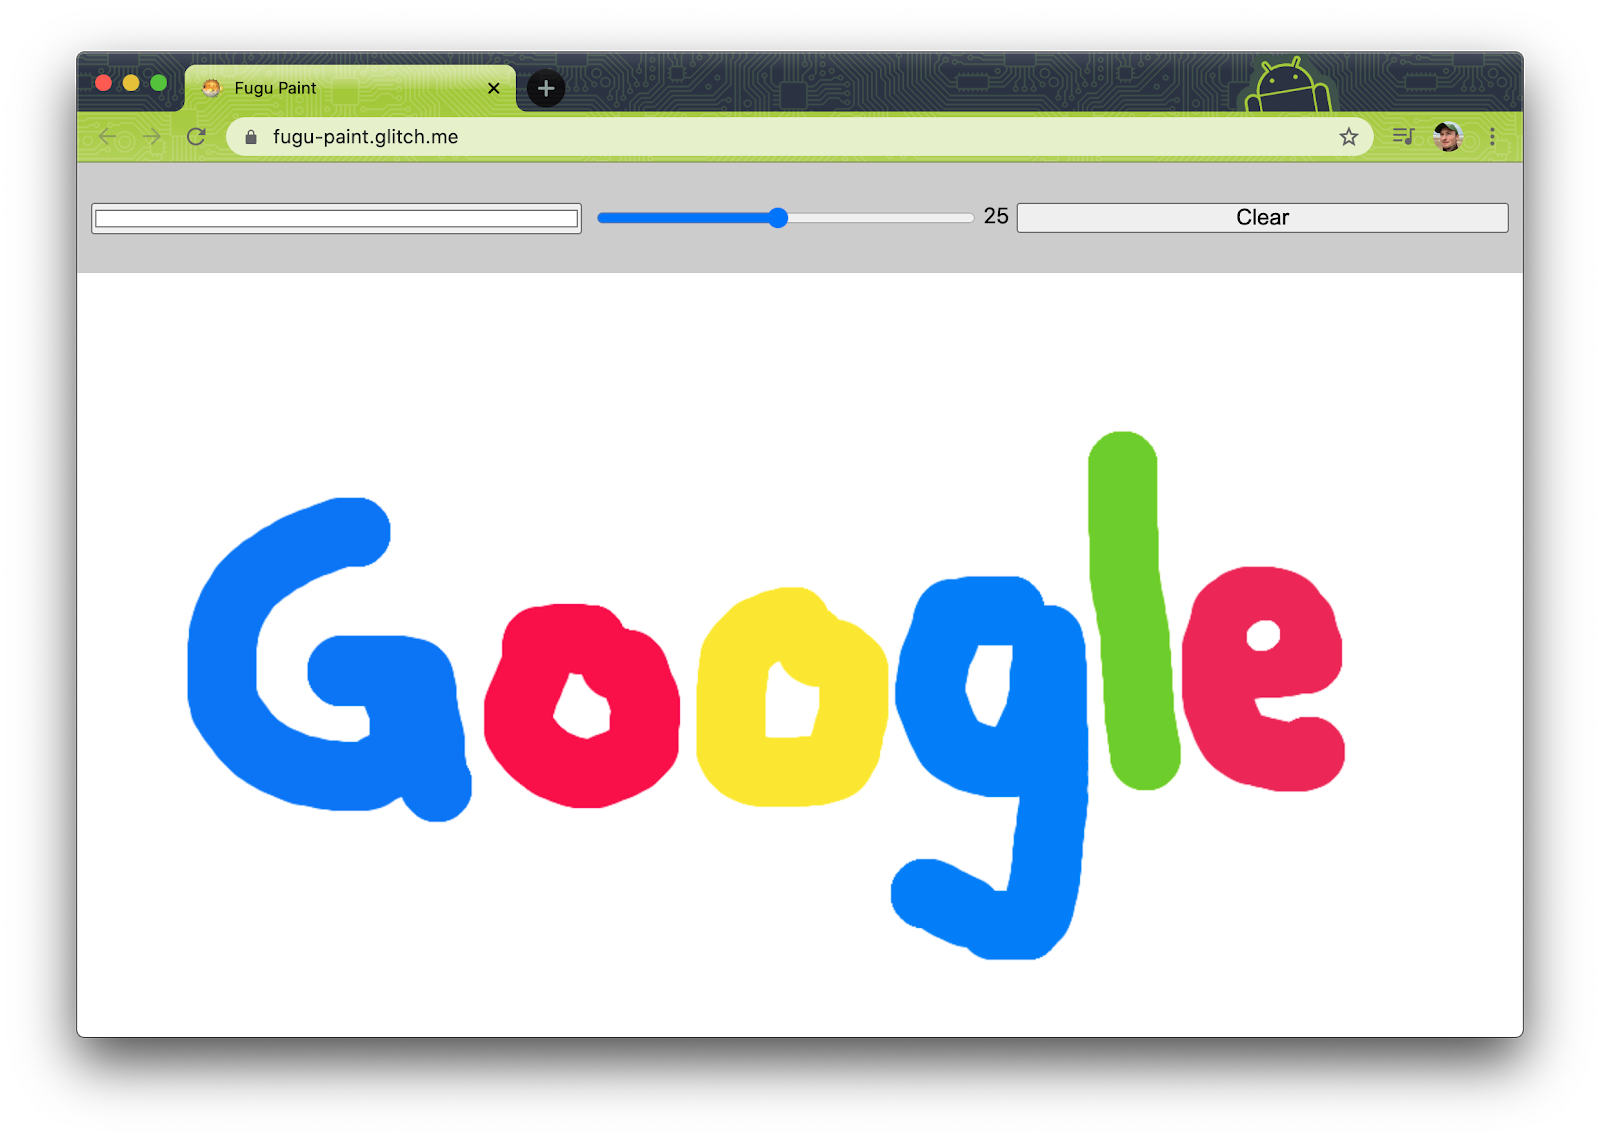 ফুগু গ্রিটিংস বেসলাইন PWA একটি বড় ক্যানভাসে &ldquo;Google&rdquo; তার উপর আঁকা।